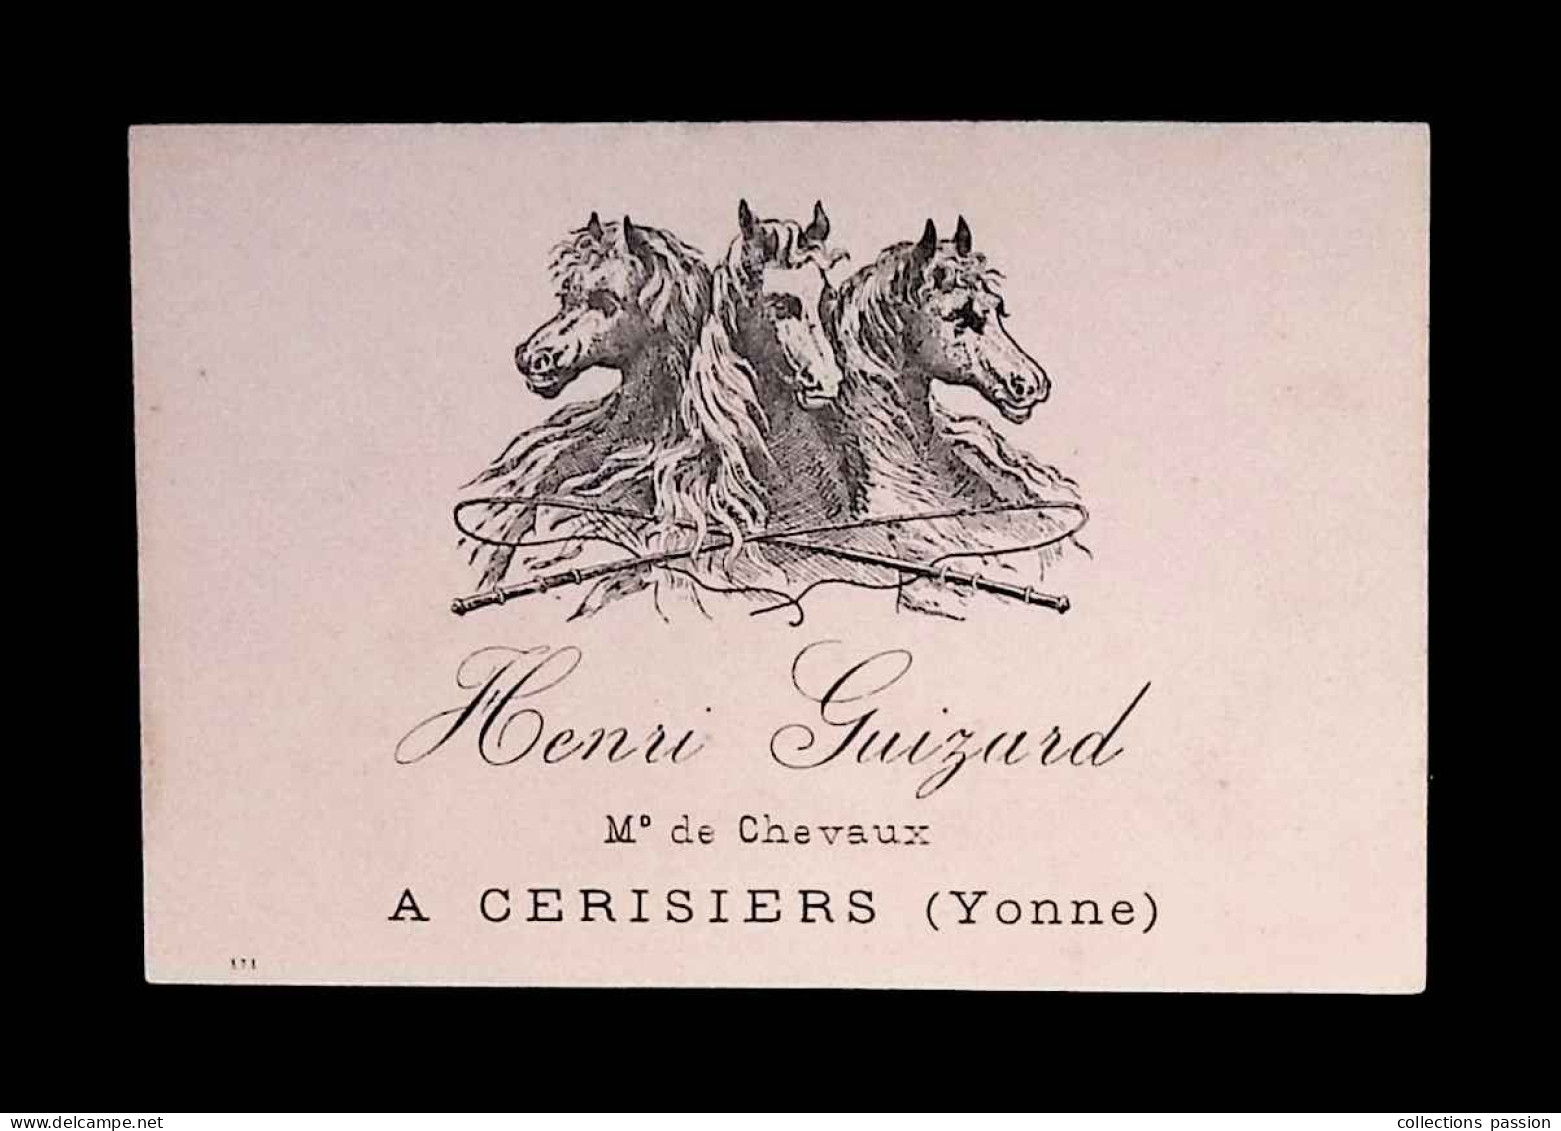 Carte De Visite, Henri Guizard, Marchand De Chevaux à Cerisiers, Yonne - Tarjetas De Visita